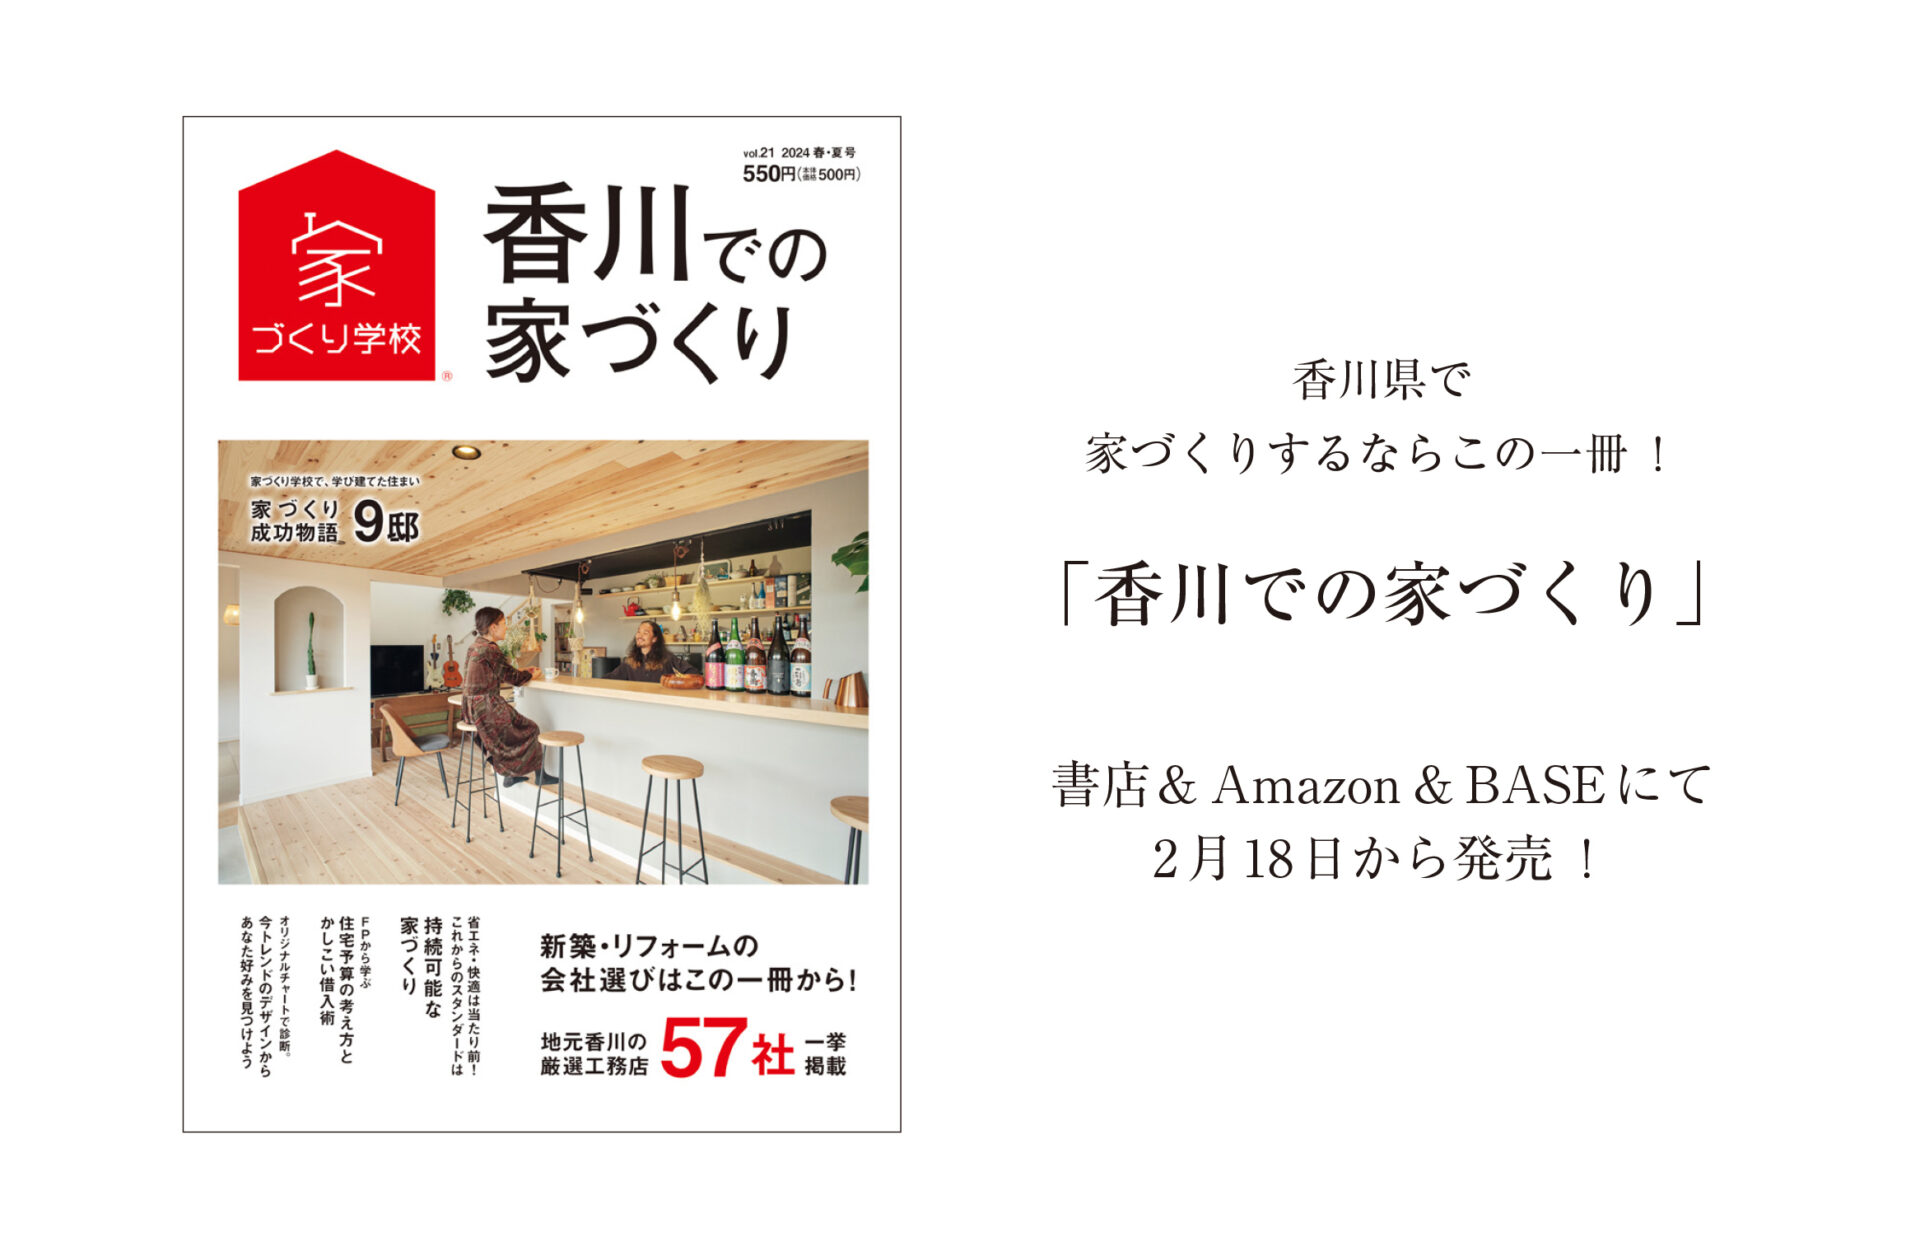 2月18日【新刊発売】『香川での家づくりVol.21』お楽しみに(#^.^#)